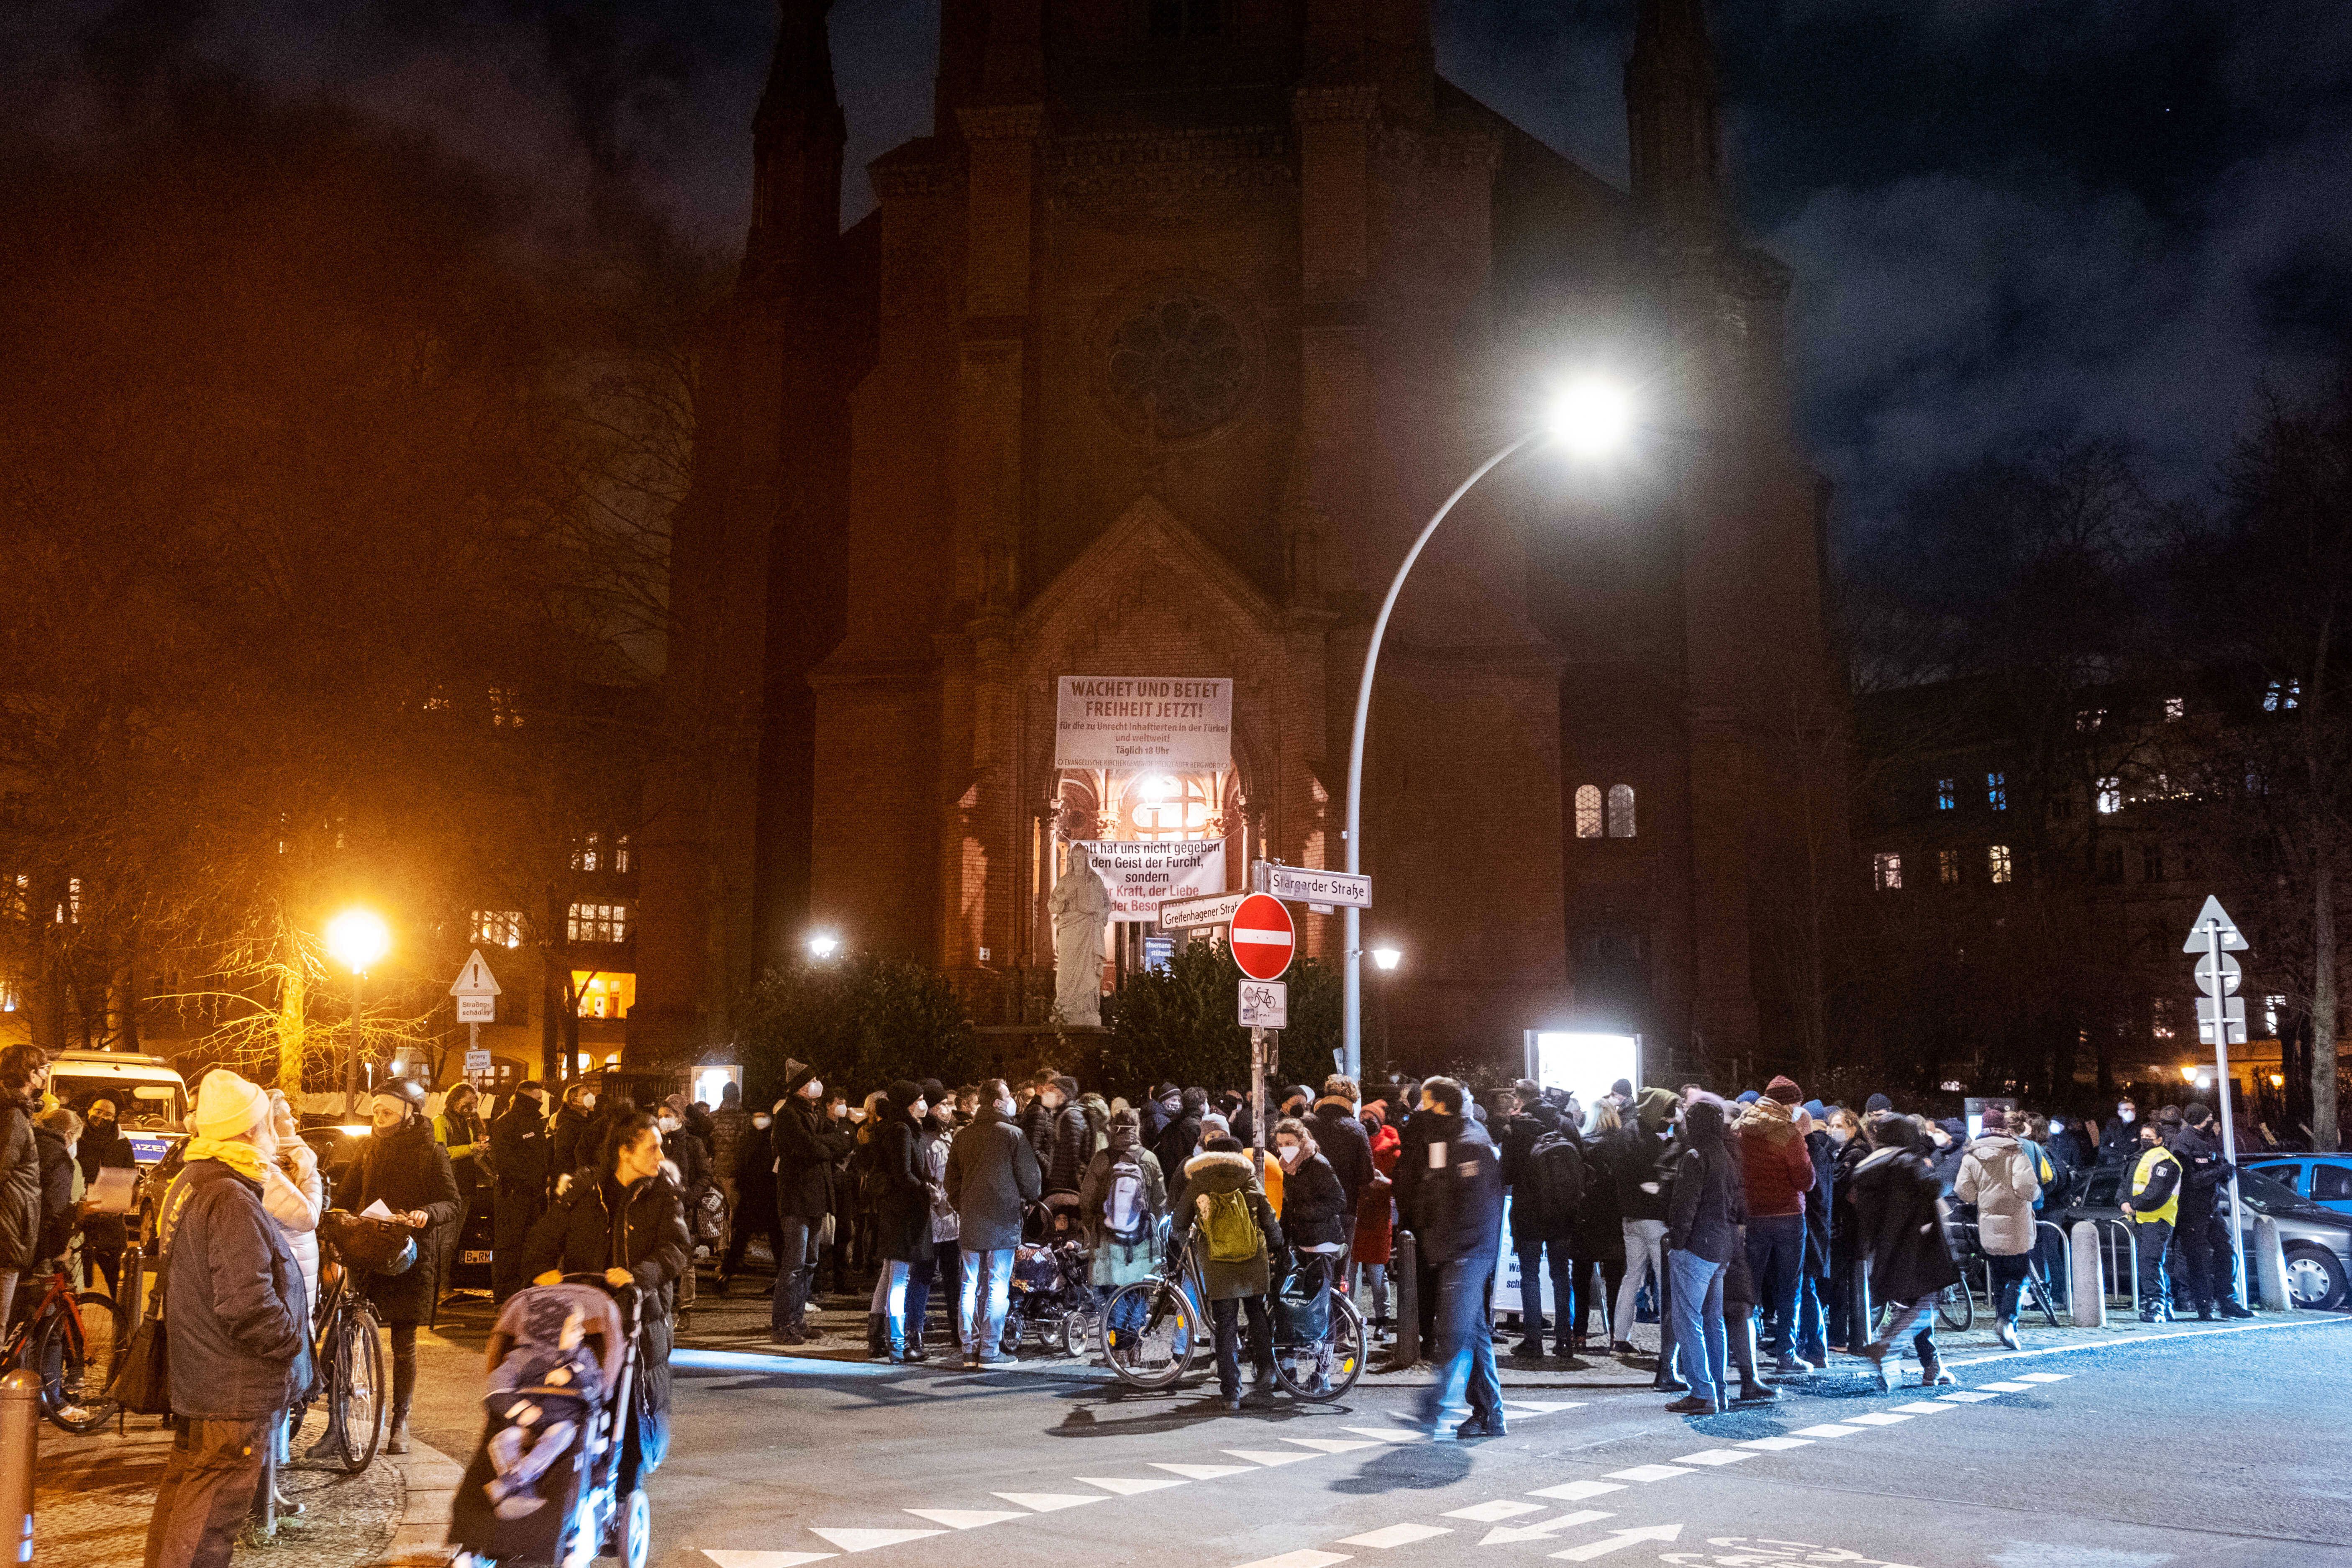 Corona-Proteste vor Berliner Gethsemanekirche - Gemeinde wehrt sich gegen Vereinnahmung